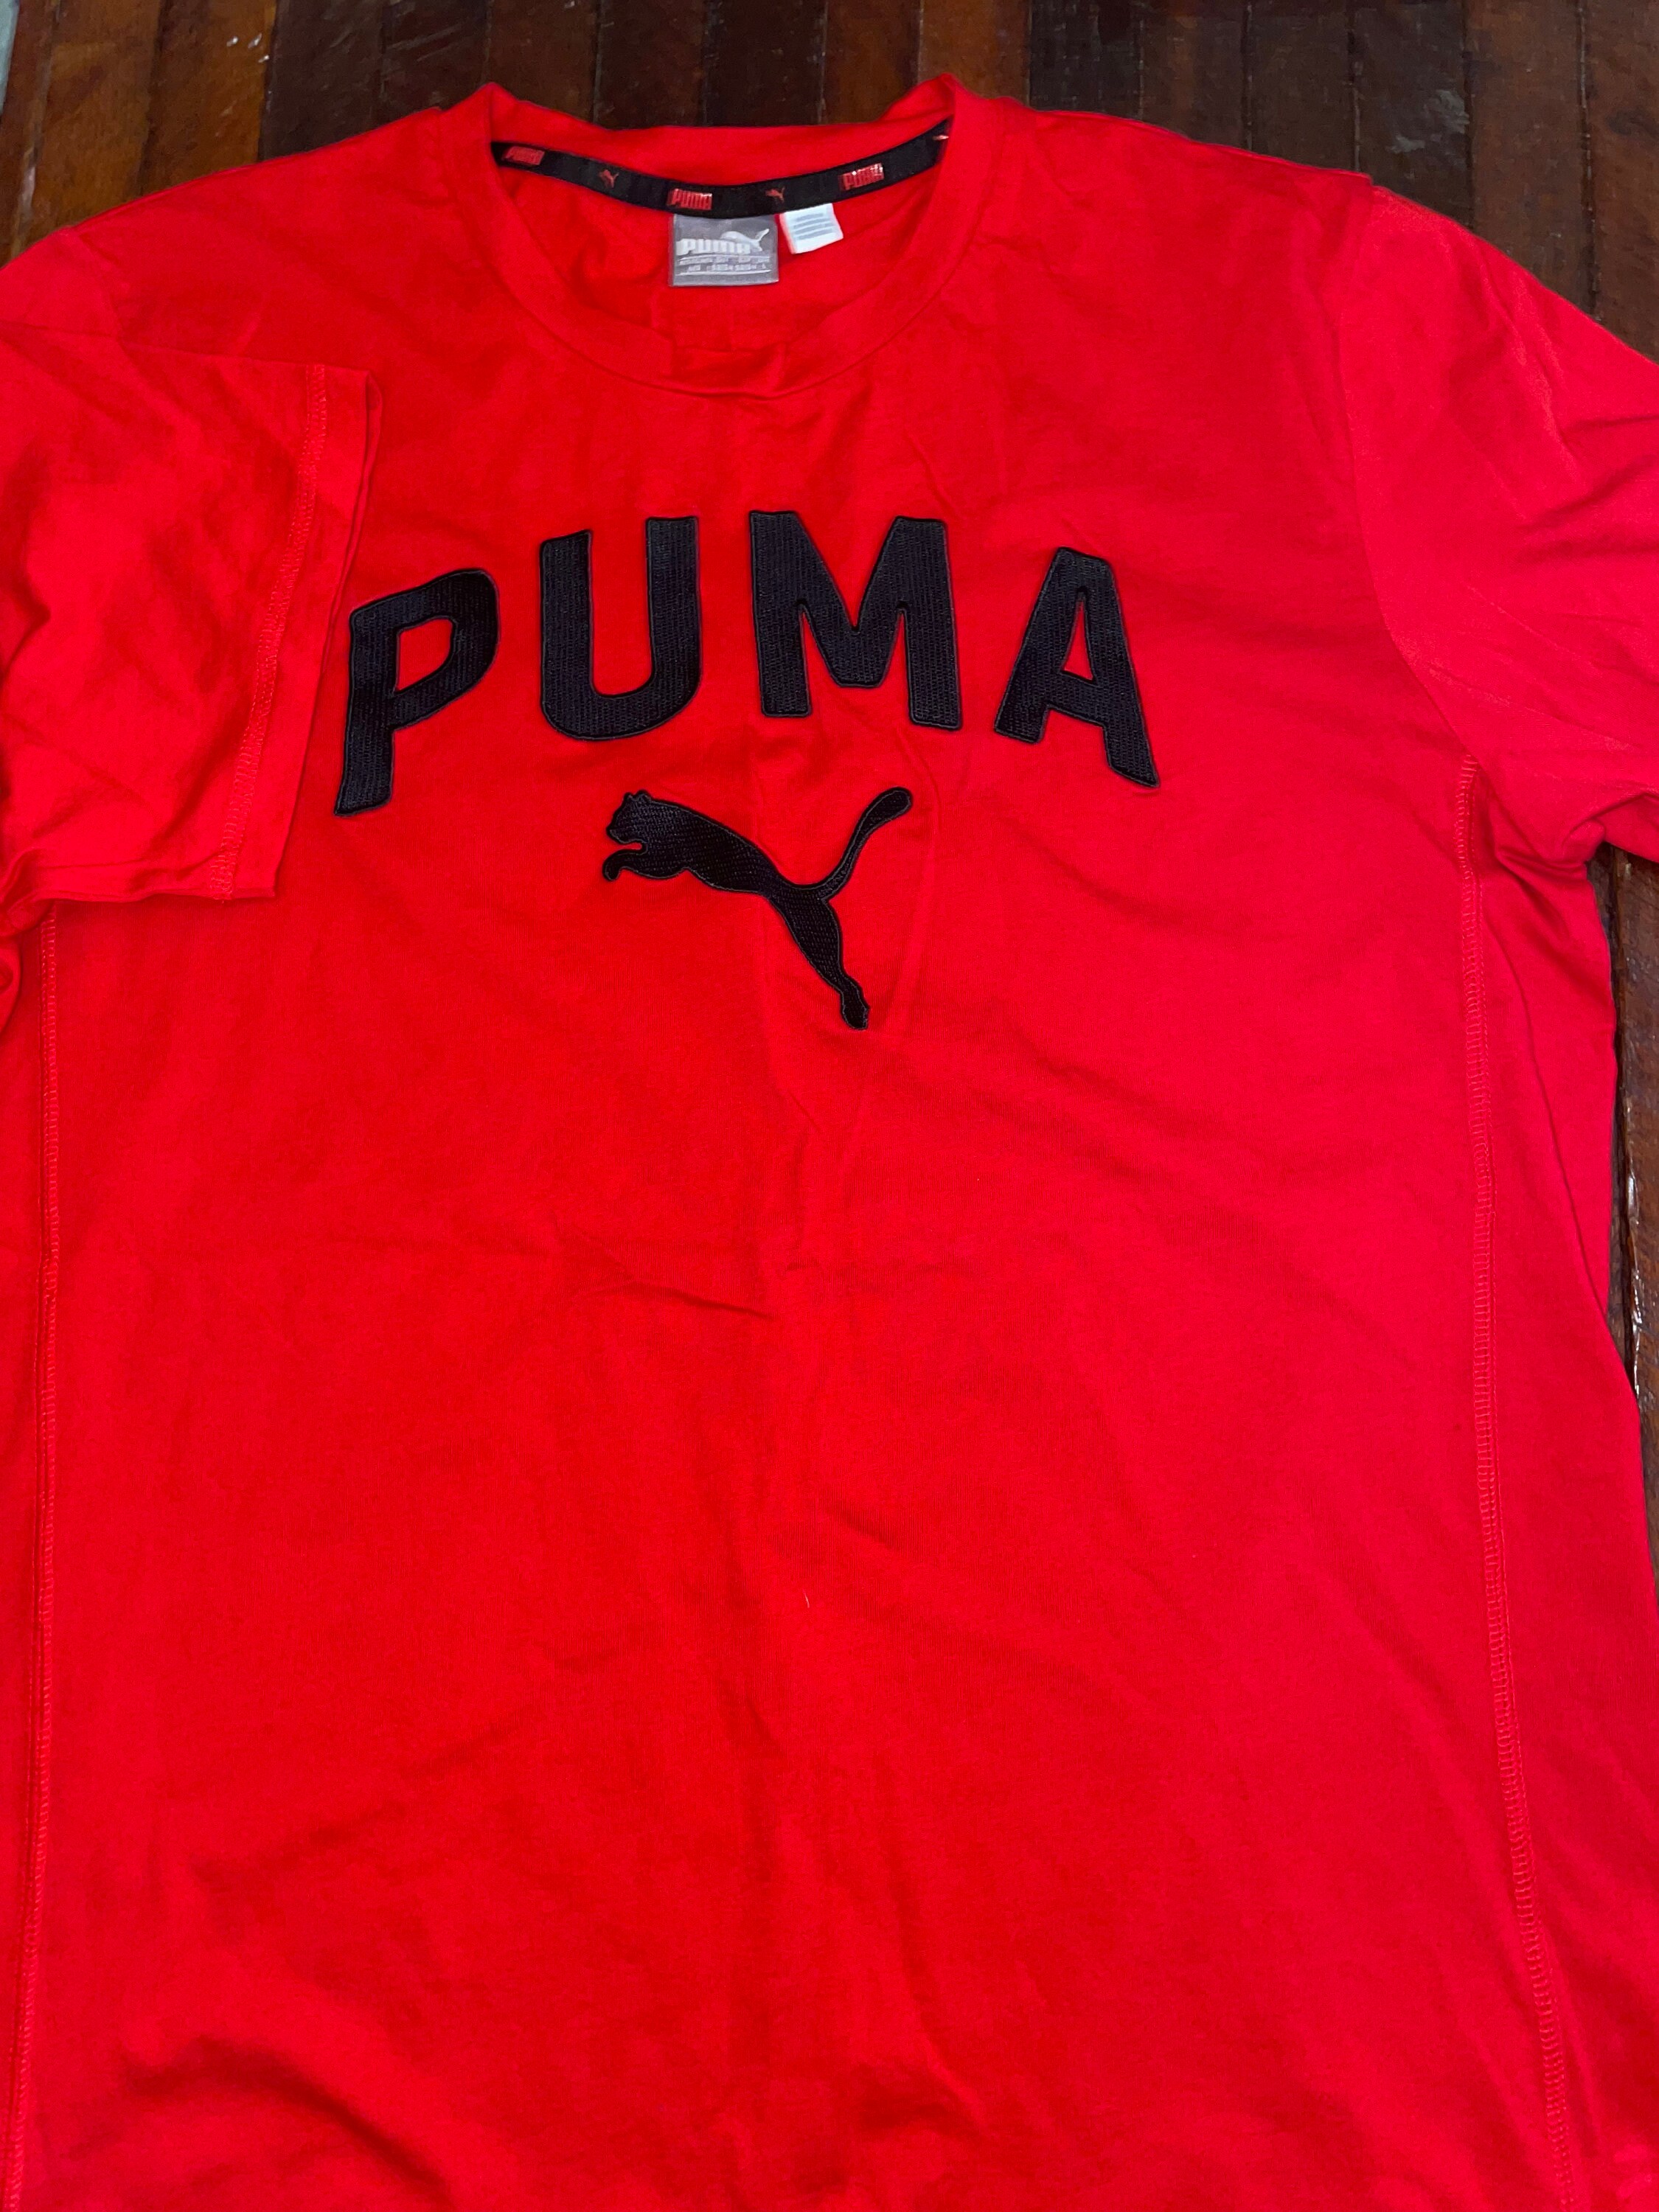 Red and Black PUMA Tshirt Etsy 